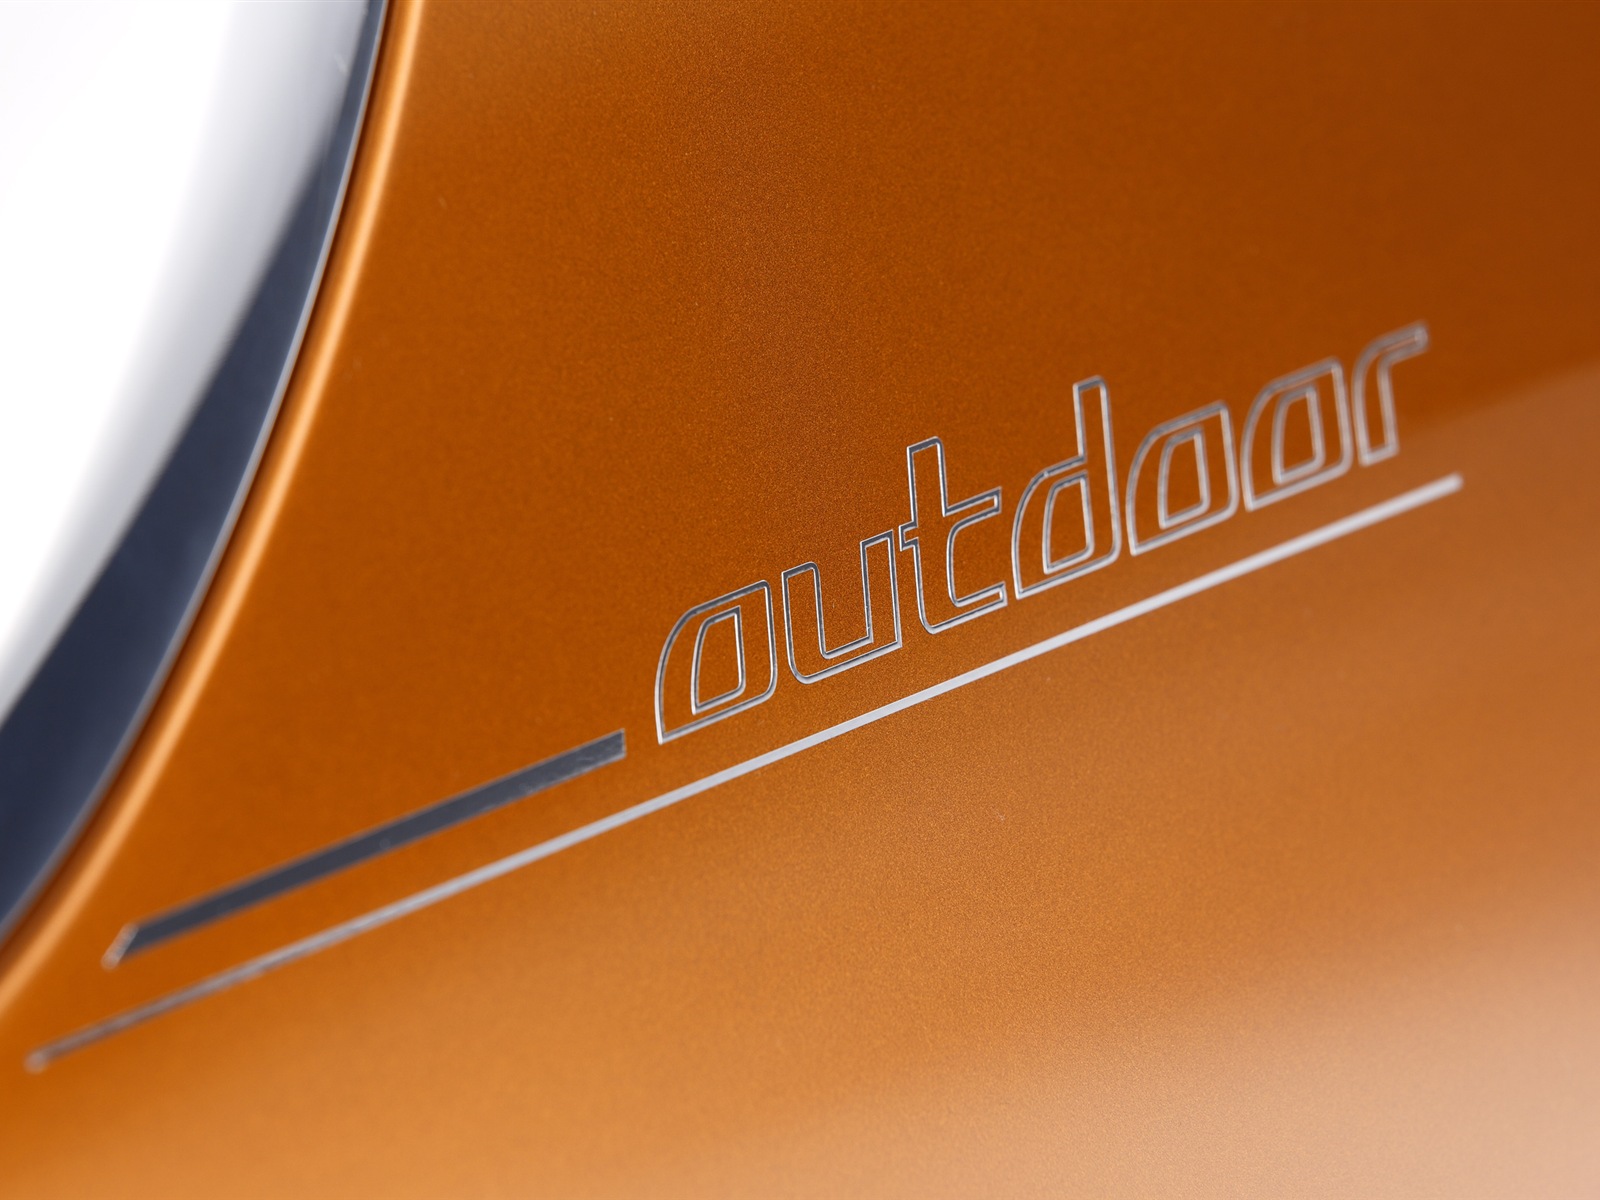 2013 BMW Concept Active Tourer 宝马旅行车 高清壁纸17 - 1600x1200